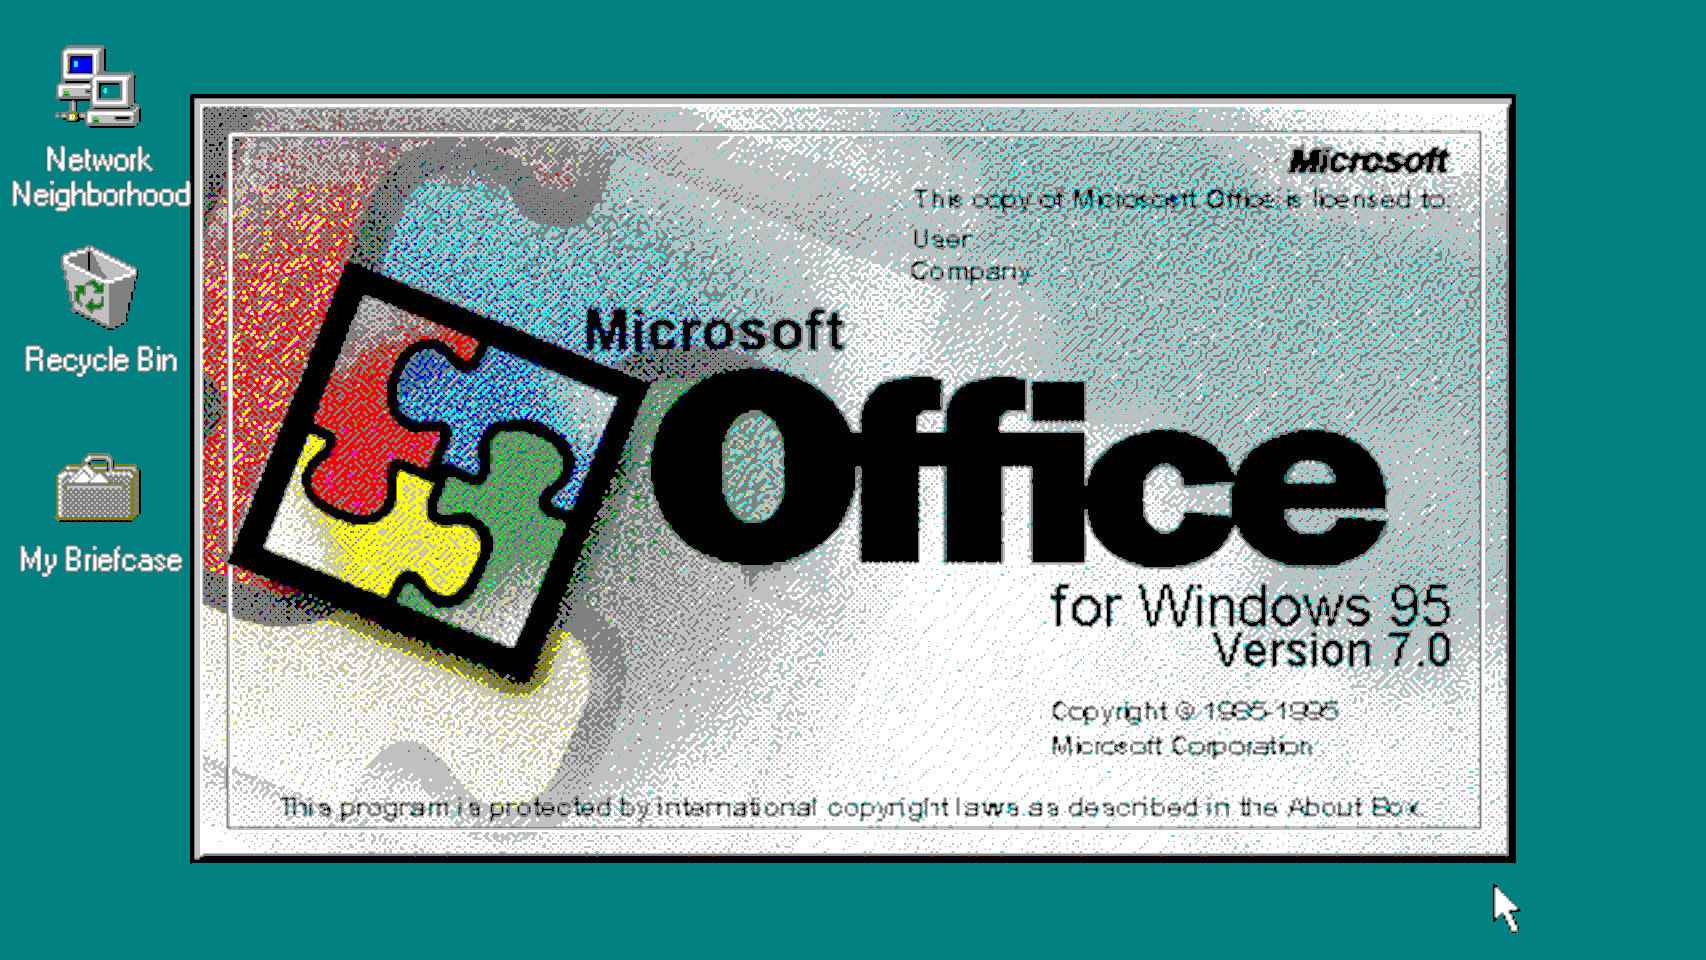 Adiós, Microsoft Office: más de 30 años después, el mítico nombre desaparece